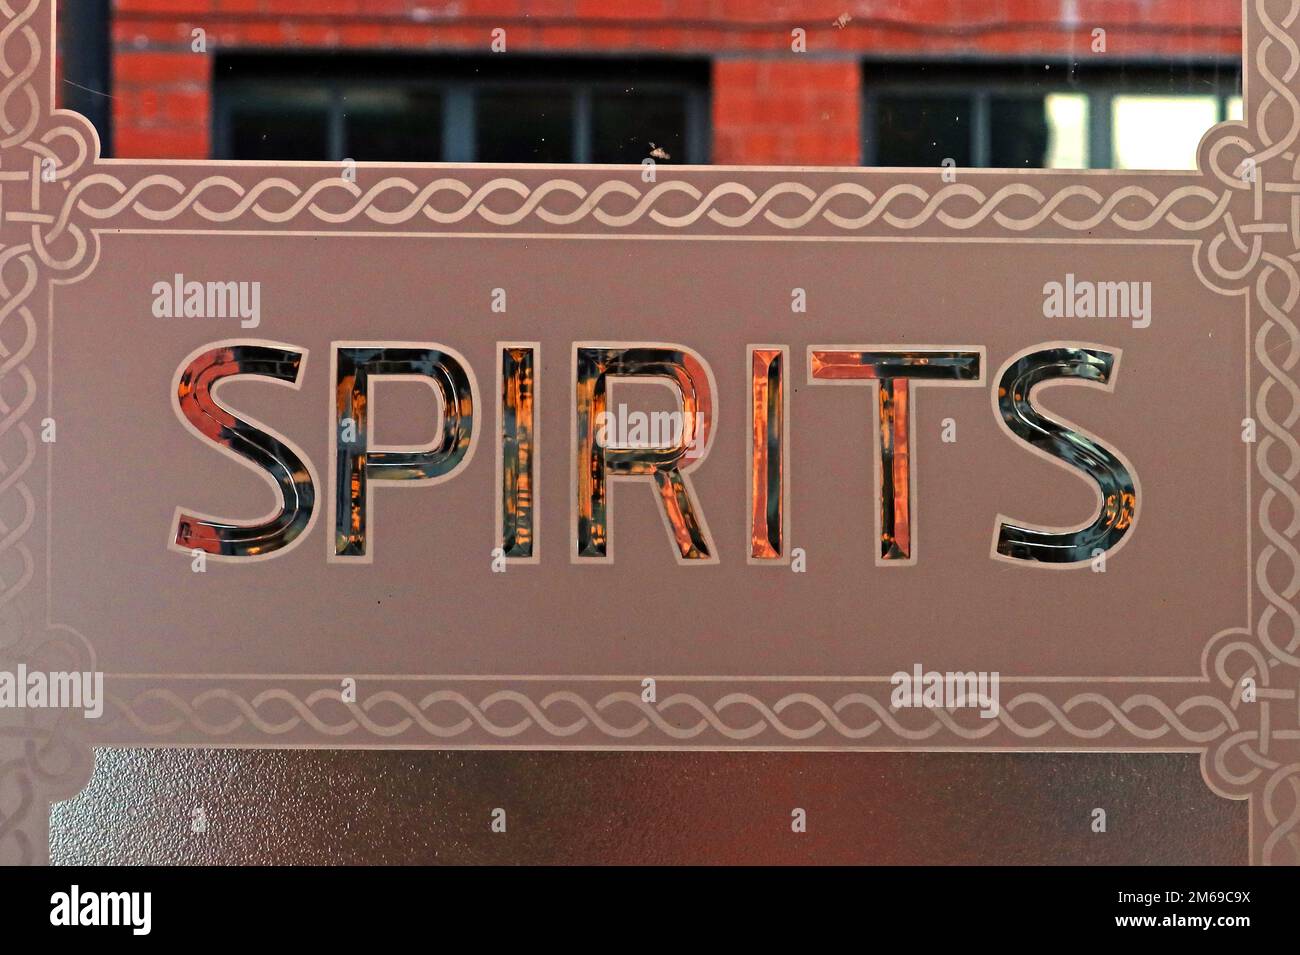 Traditionelles viktorianisches Pubfenster, Spirits, im Lass O Gowrie, 36 Charles Street, Manchester, England, Großbritannien, M1 7DB Stockfoto